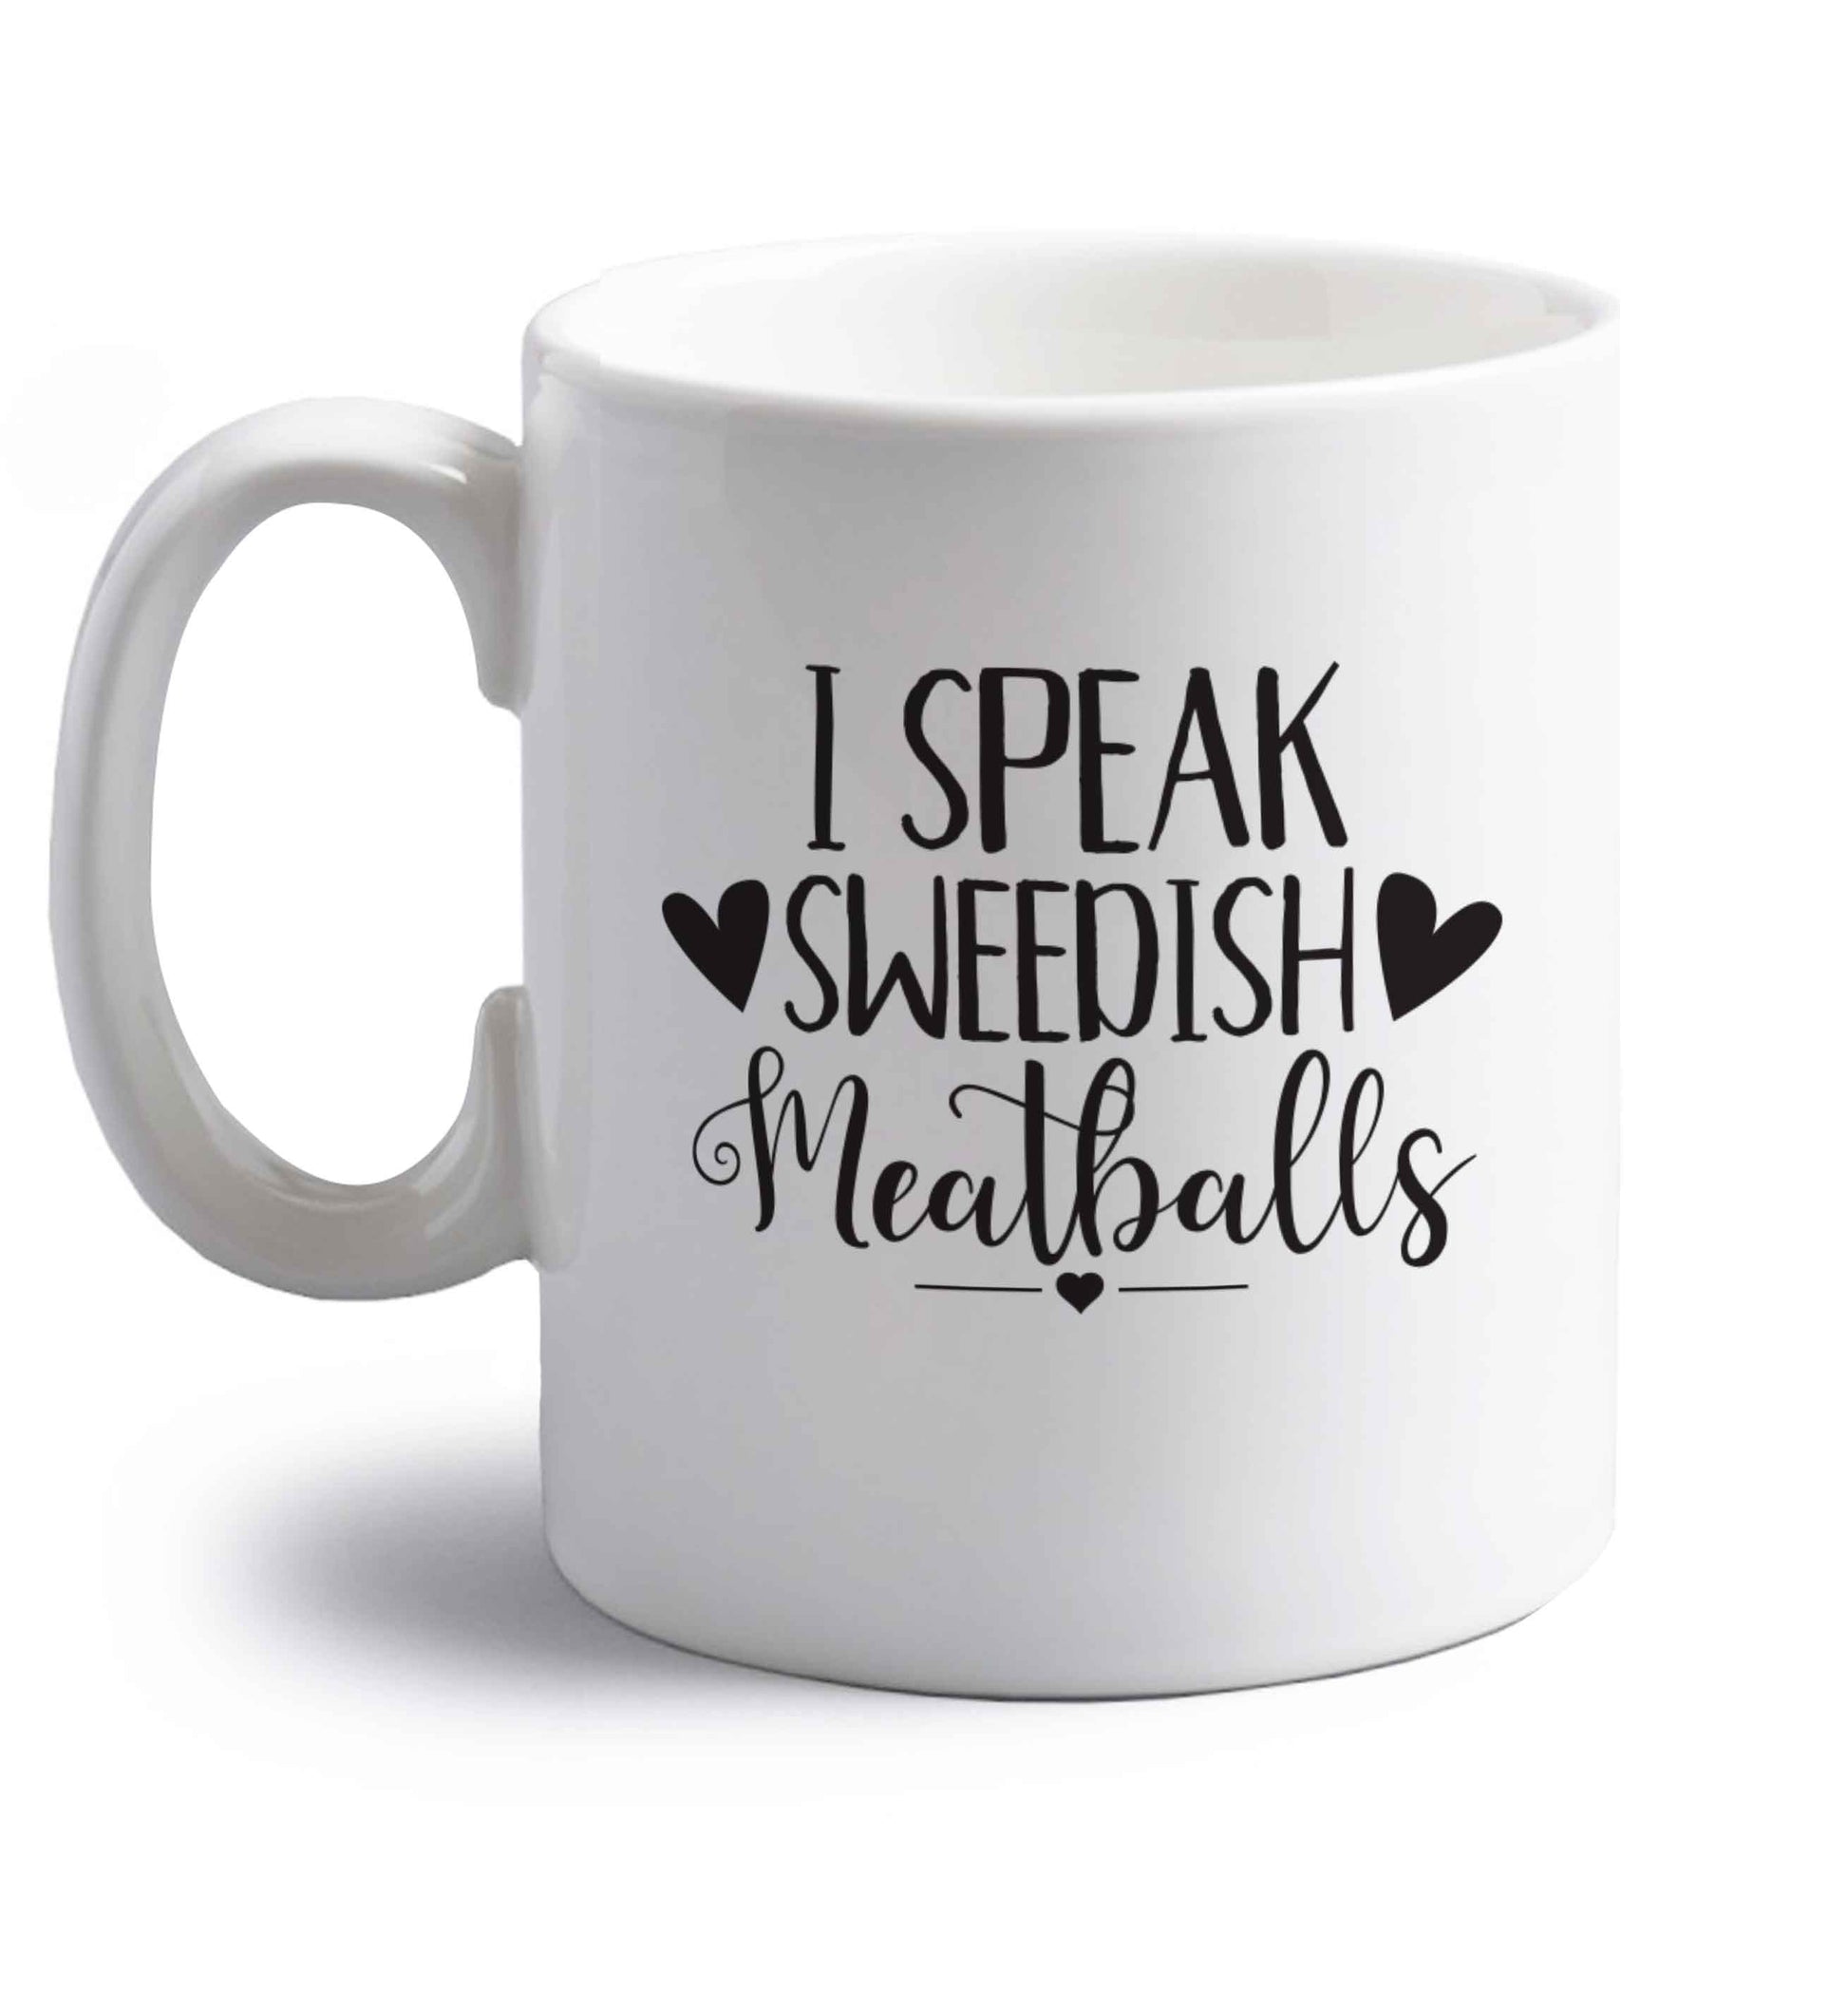 I speak sweedish...meatballs right handed white ceramic mug 